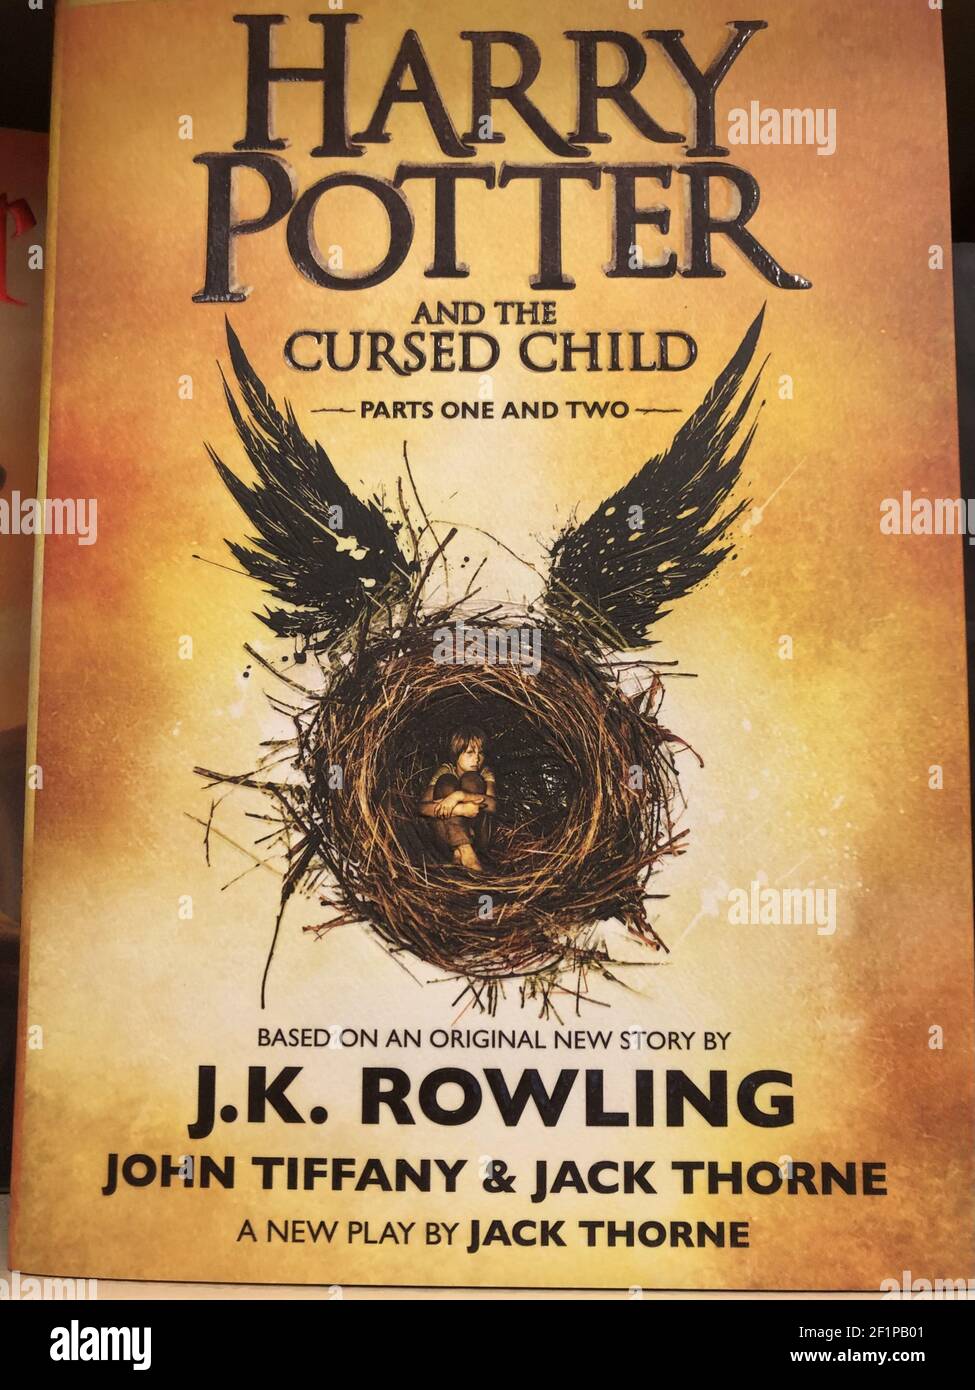 OCEAN SPRINGS, ÉTATS-UNIS - 02 mars 2021 : couverture du livre de fantaisie  « Harry Potter and the Cursed Child » de J.K. Rowling Photo Stock - Alamy